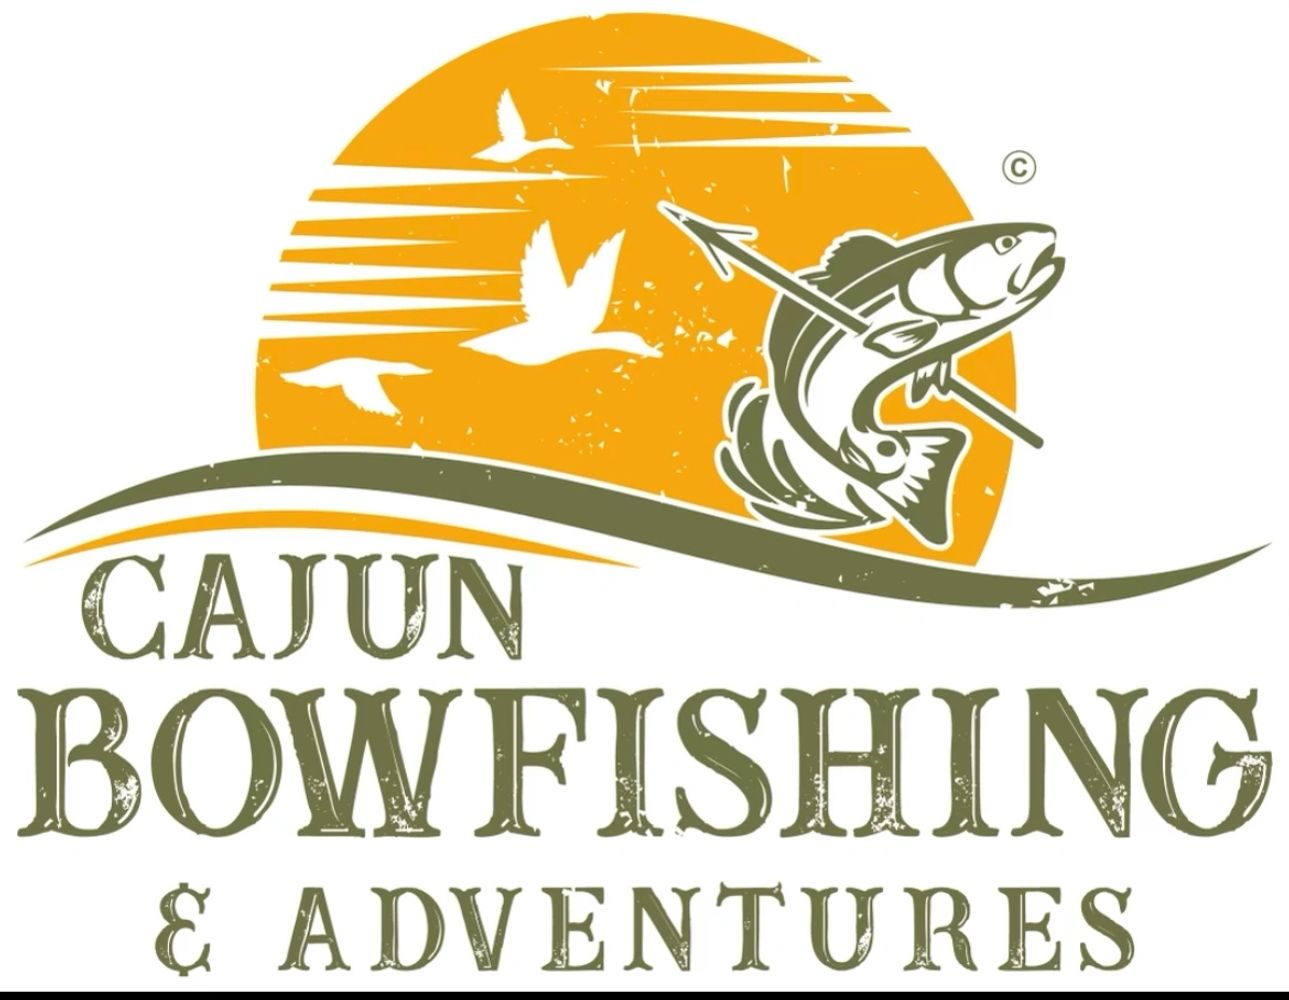 Cajun bowfishing & adventures